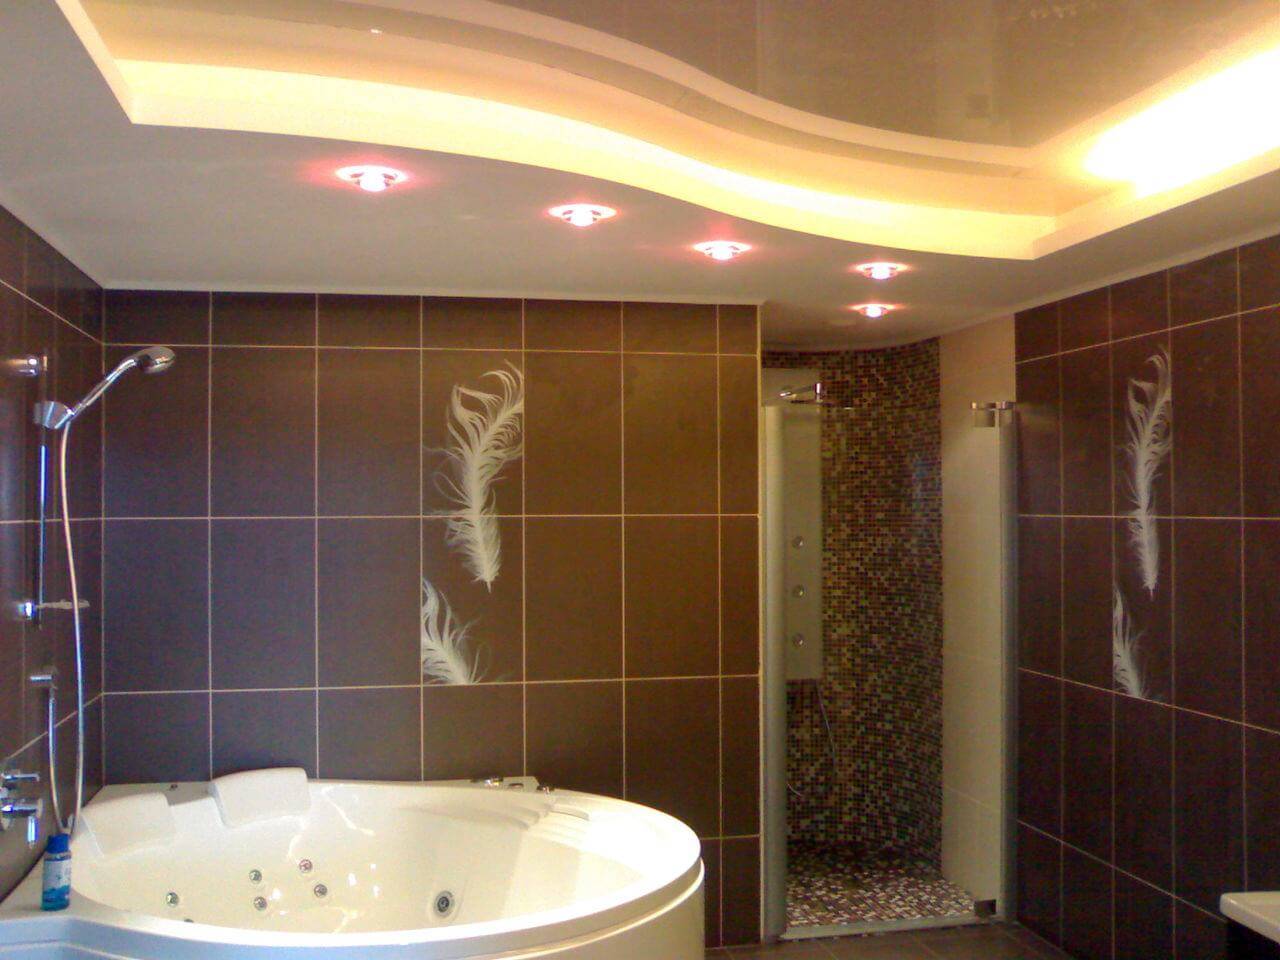 Натяжные потолки в ванной комнате: идеи дизайна 2021 года на фото